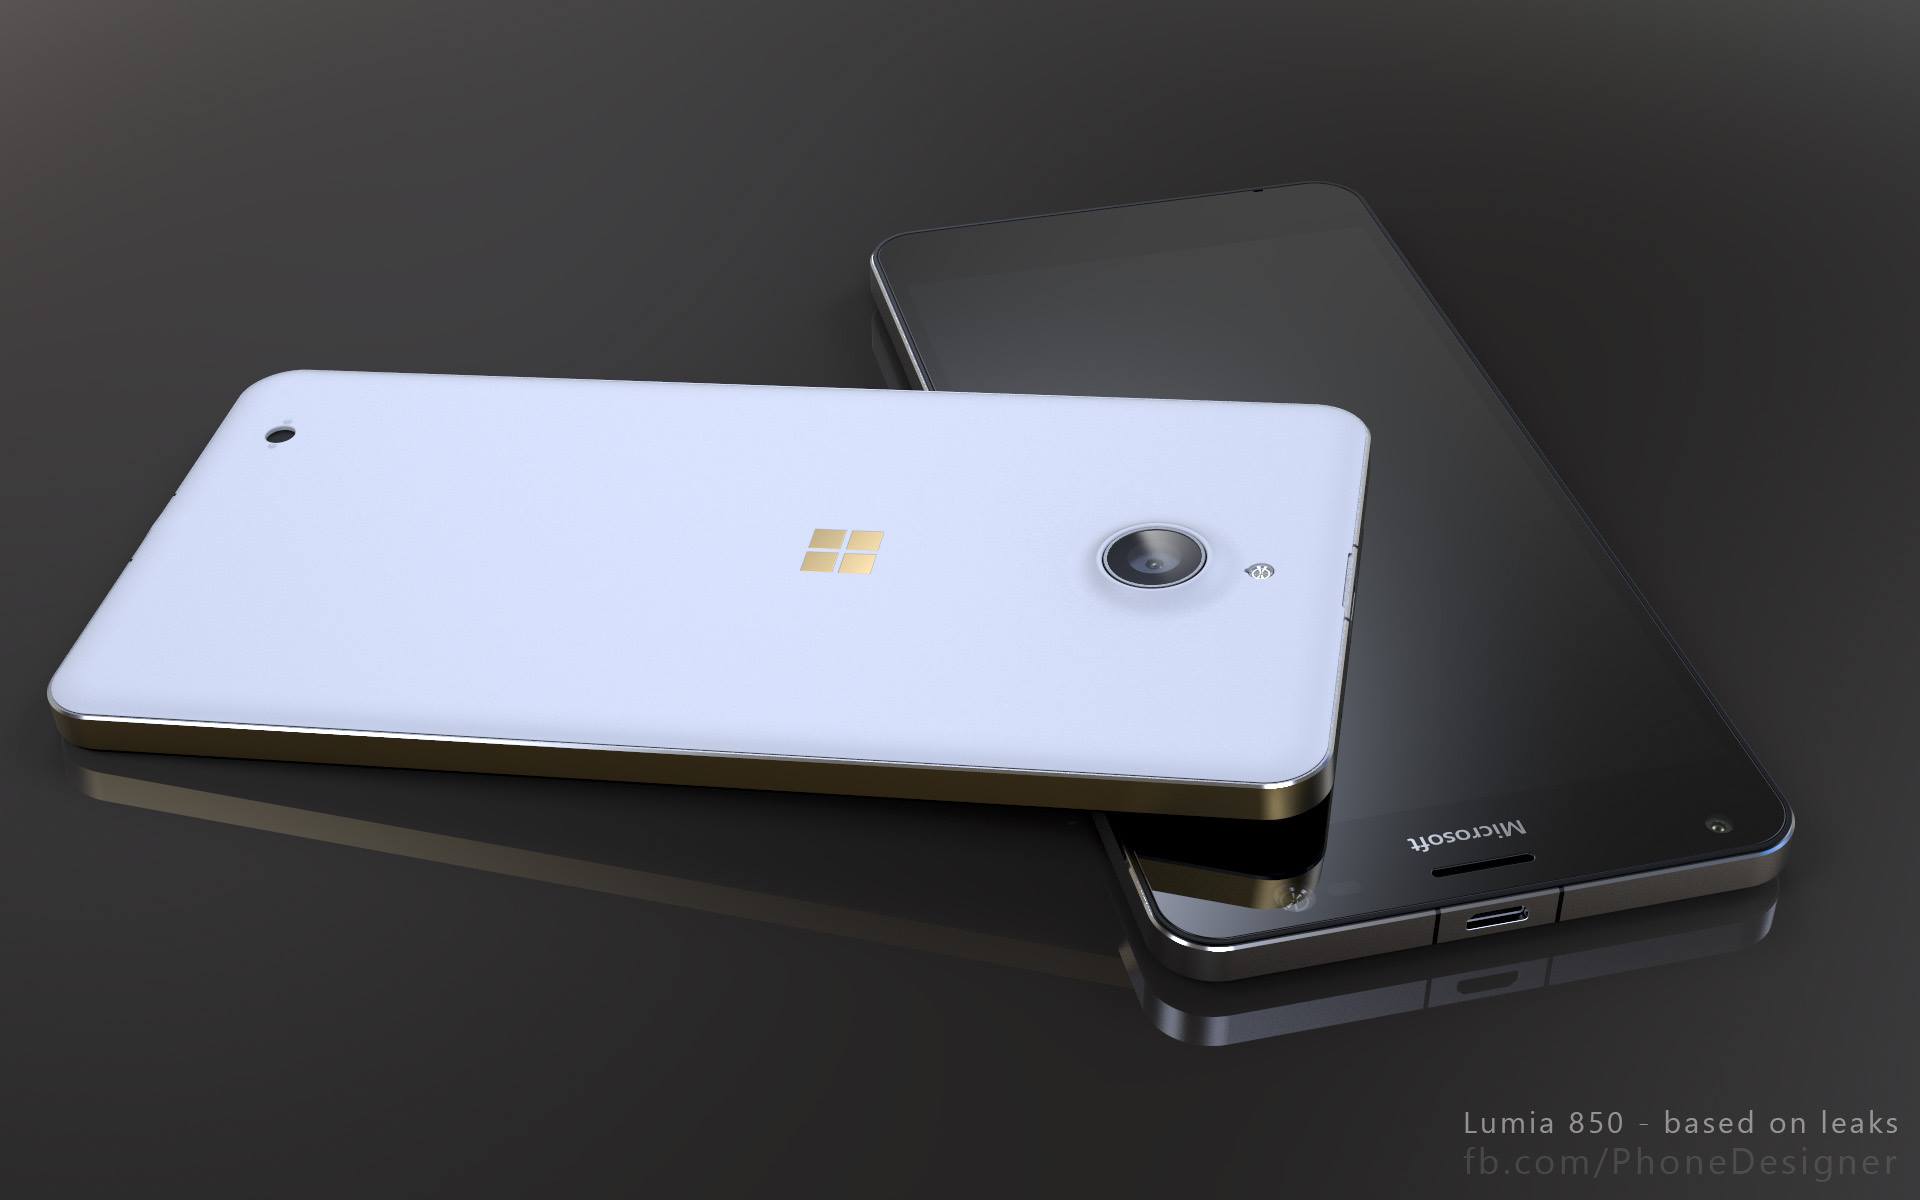 Microsoft-Lumia-850-renders-based-on-leaks (1)